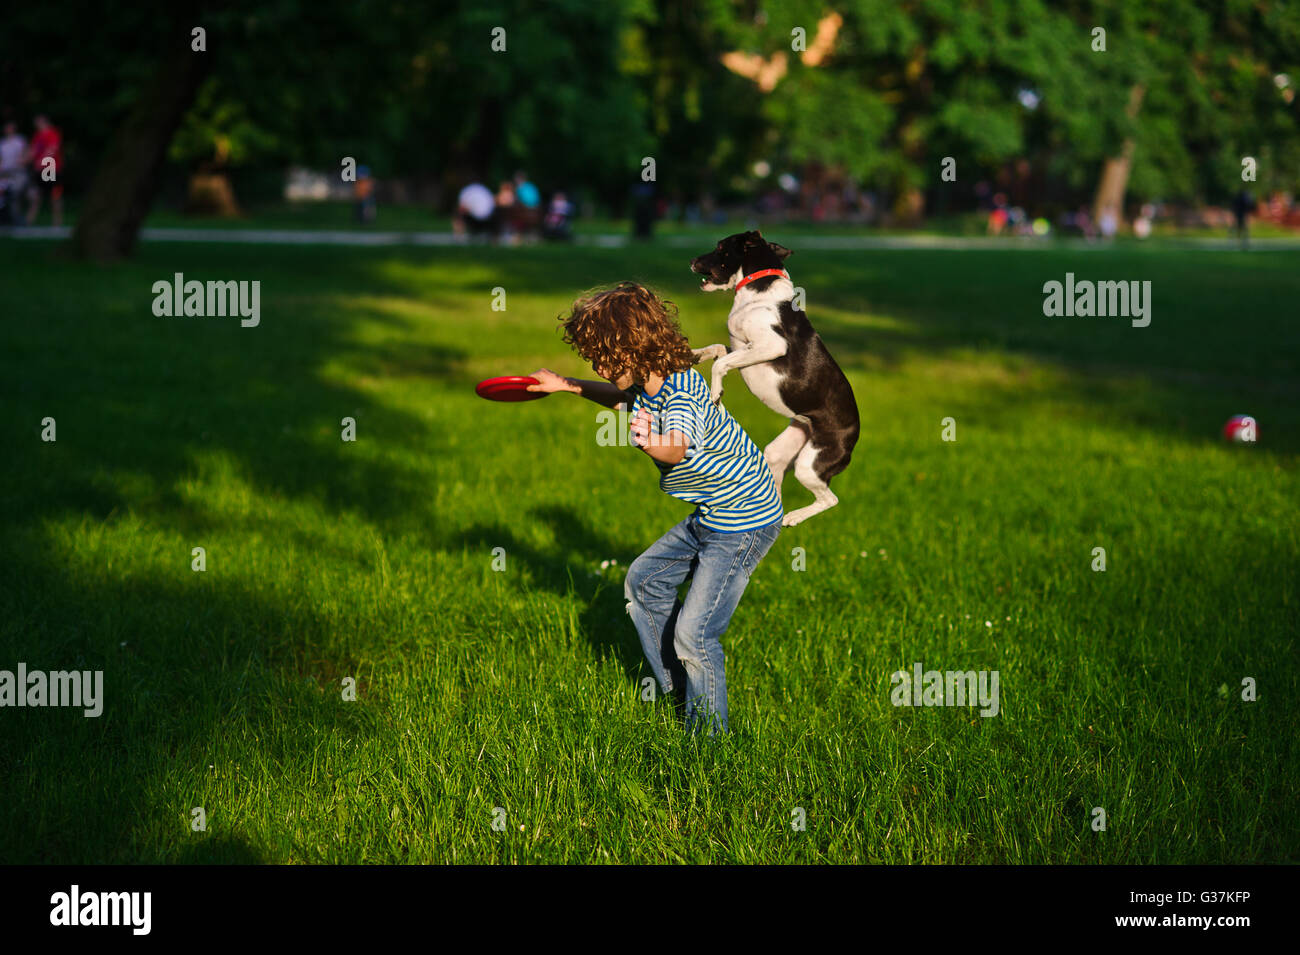 Il ragazzo treni un cane.In un giardino estivo del ragazzo di 8-9 anni suona con un cane.In una mano al ragazzo di un disco.altamente saltato cane trie Foto Stock